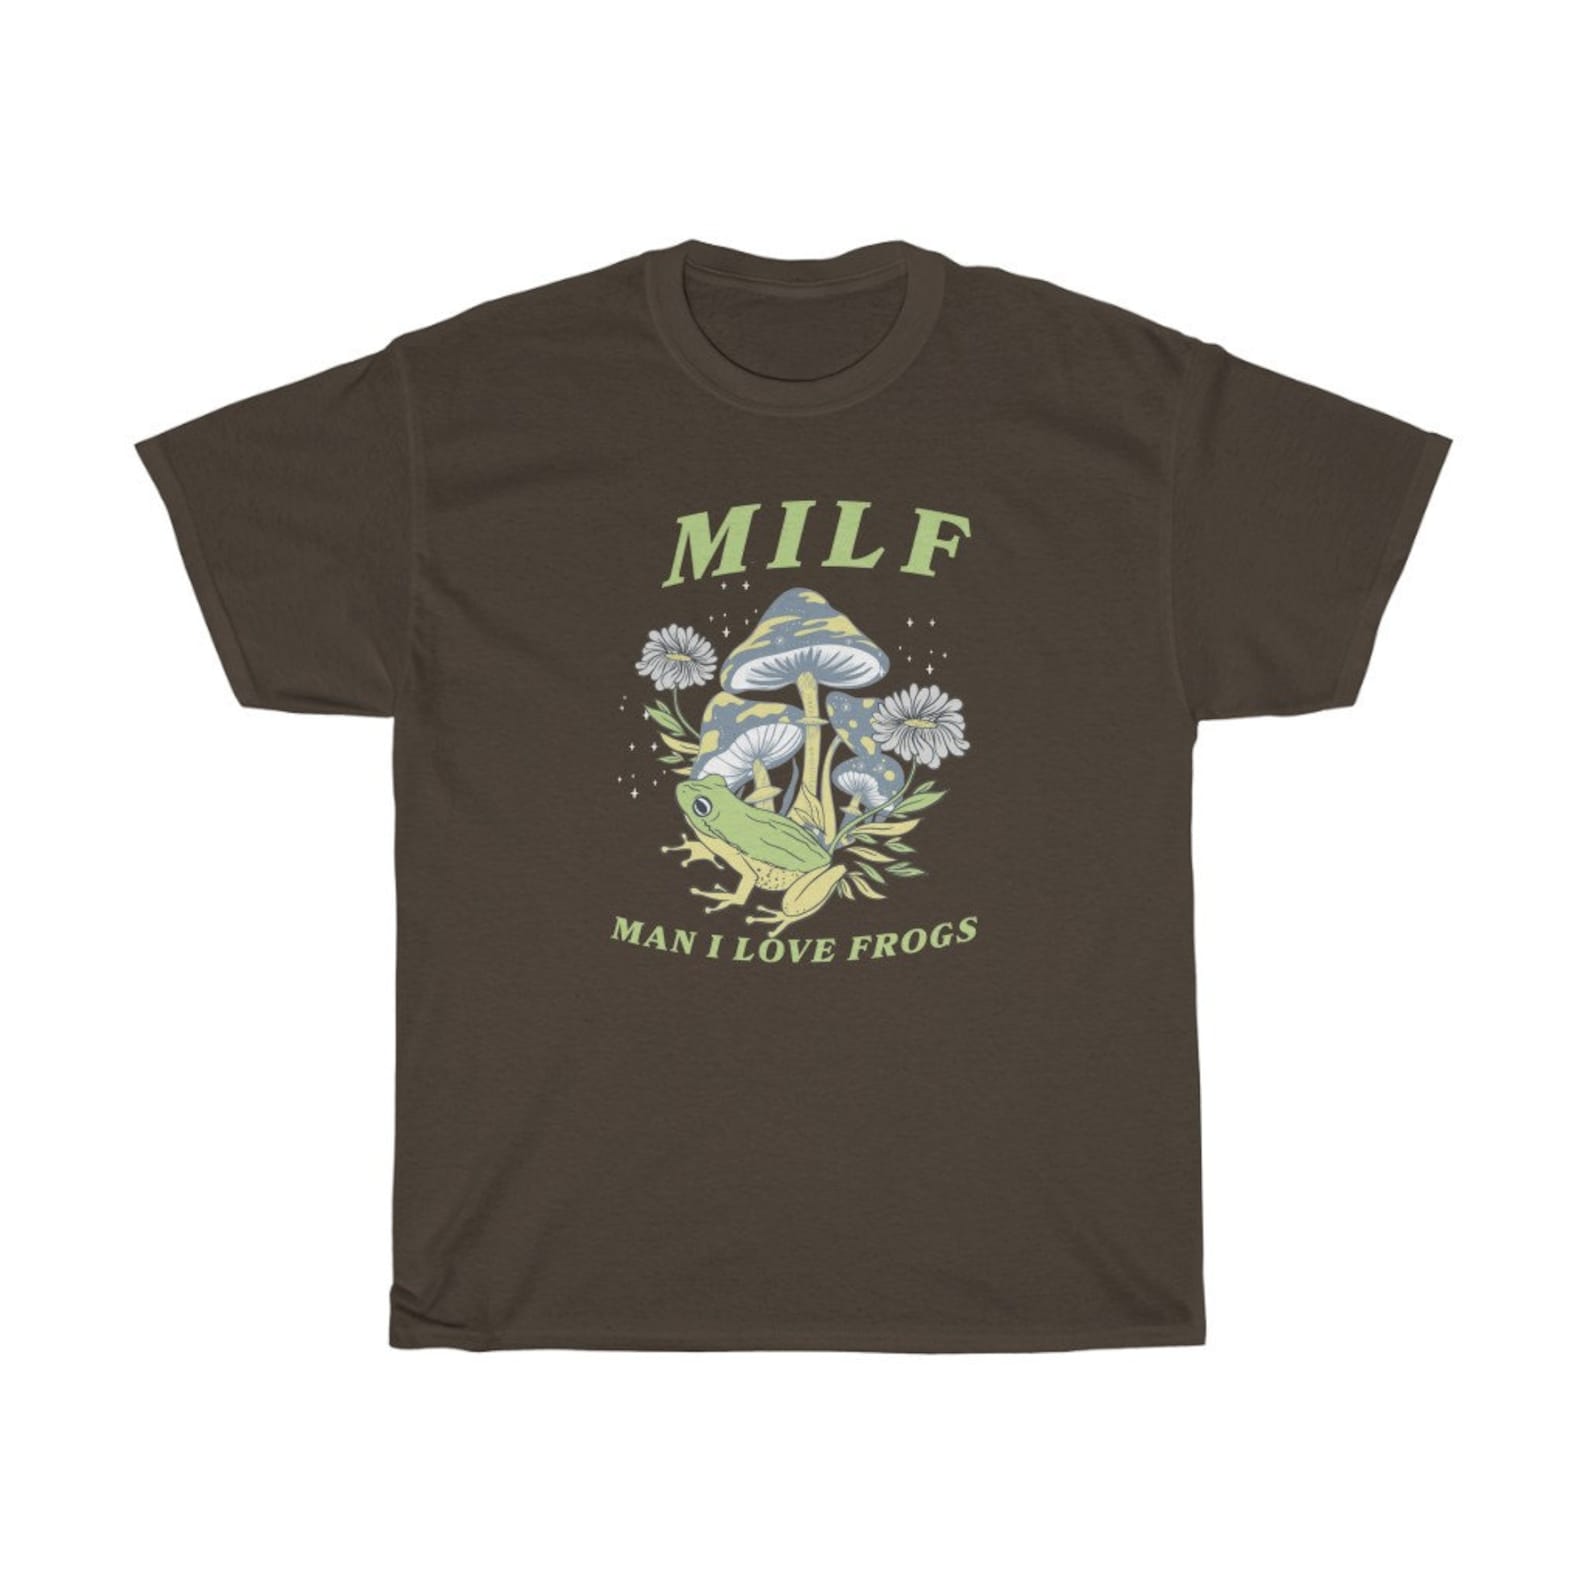 MILF Shirt Man I Love Frogs Shirtfrog and Mushroom - Etsy